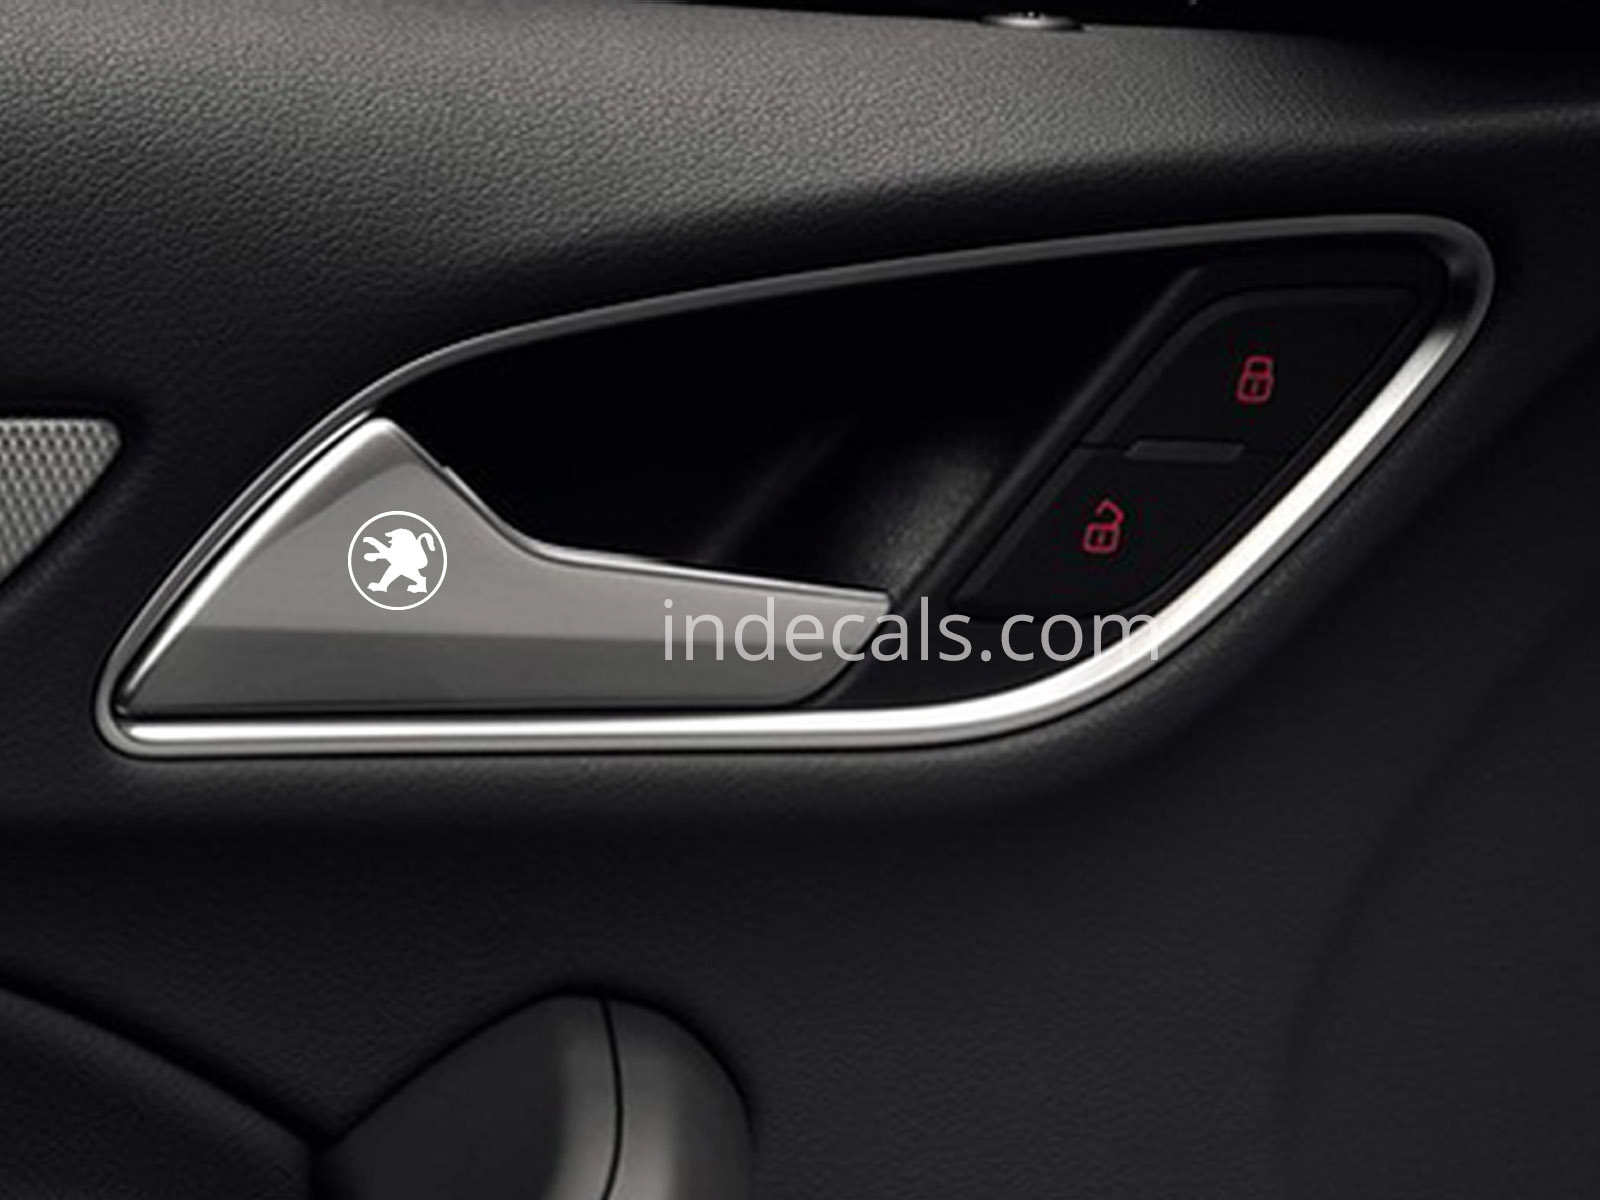 6 x Peugeot Stickers for Door Handle - White